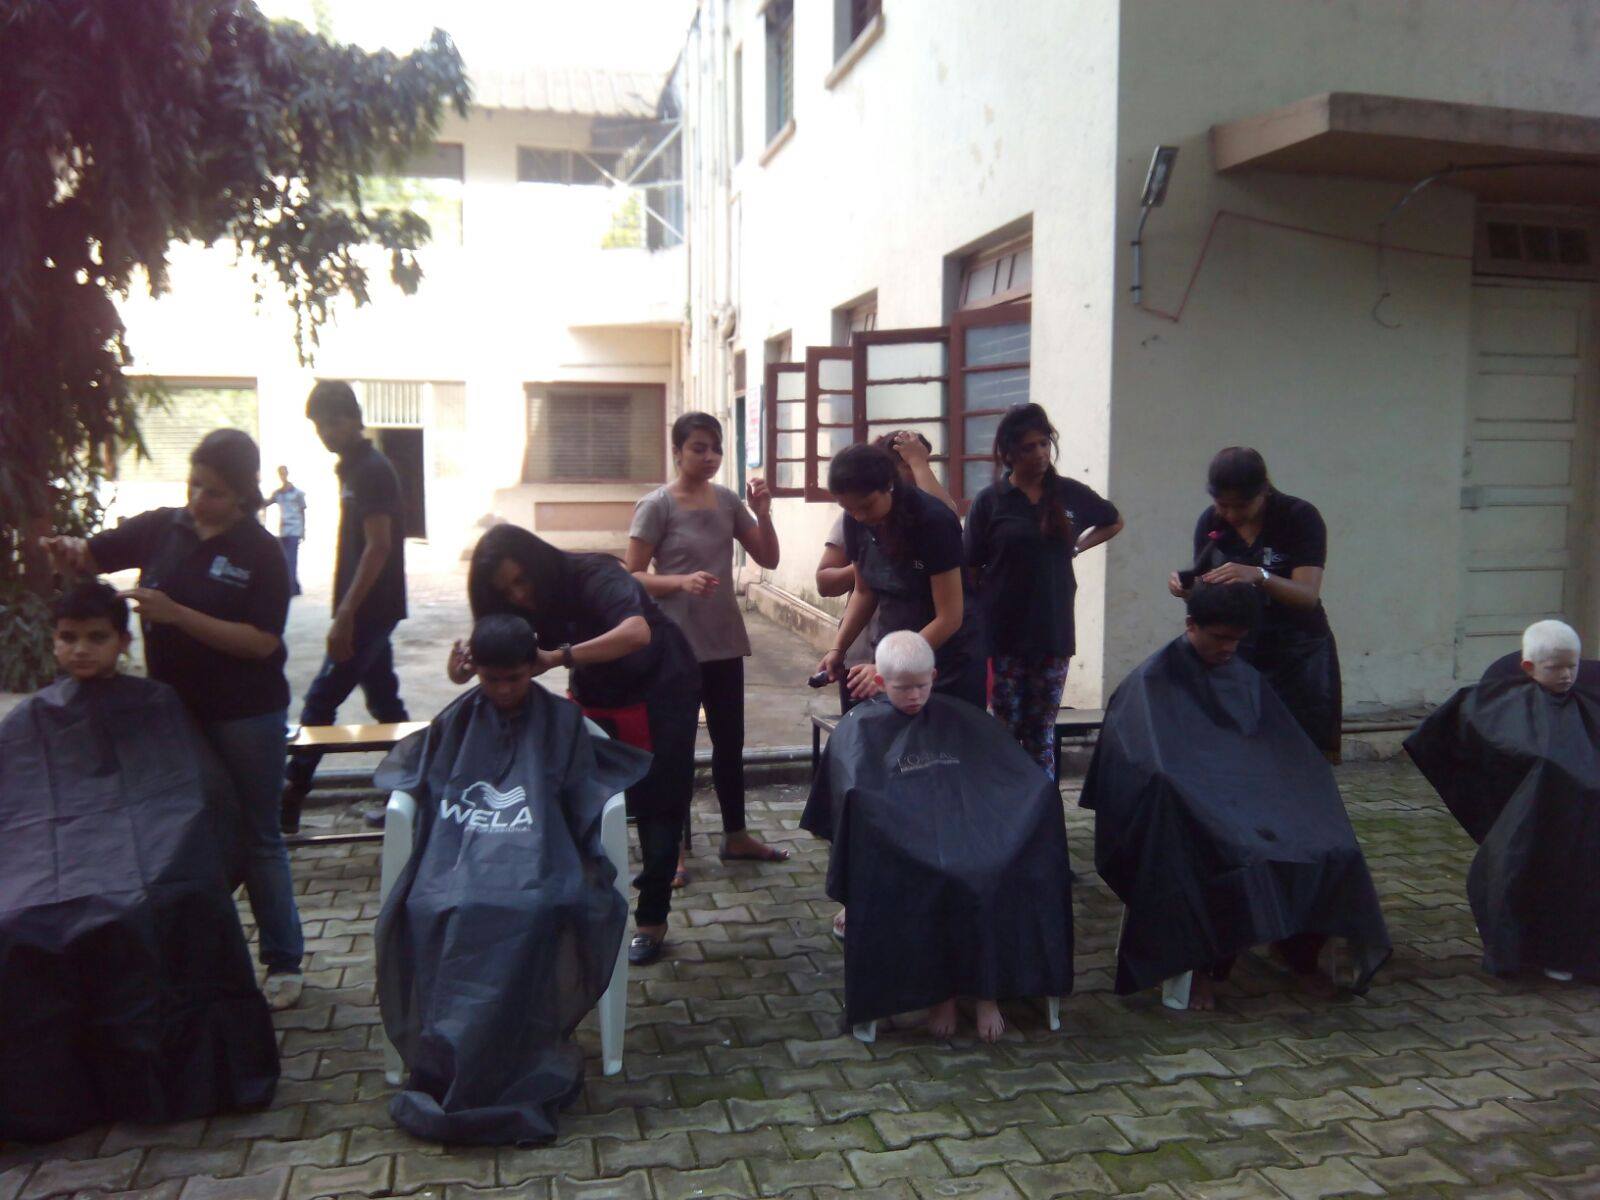 Free Hair cut Camp